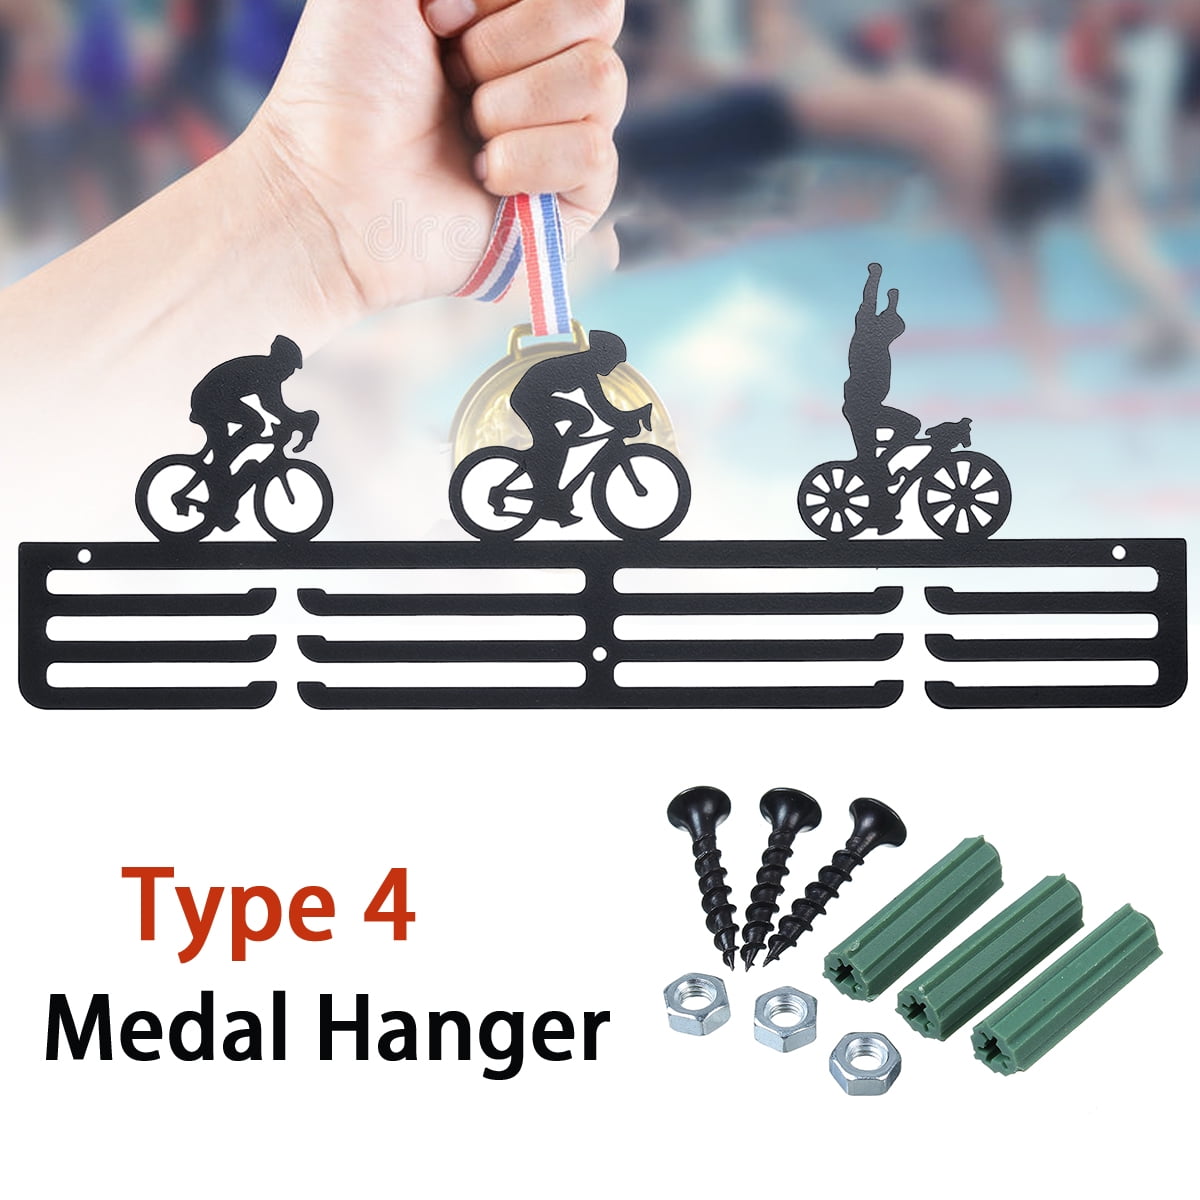 Fashions Gymnastics Holder Sport Medal Hanger Display Rack For Gymnast Hold 32 